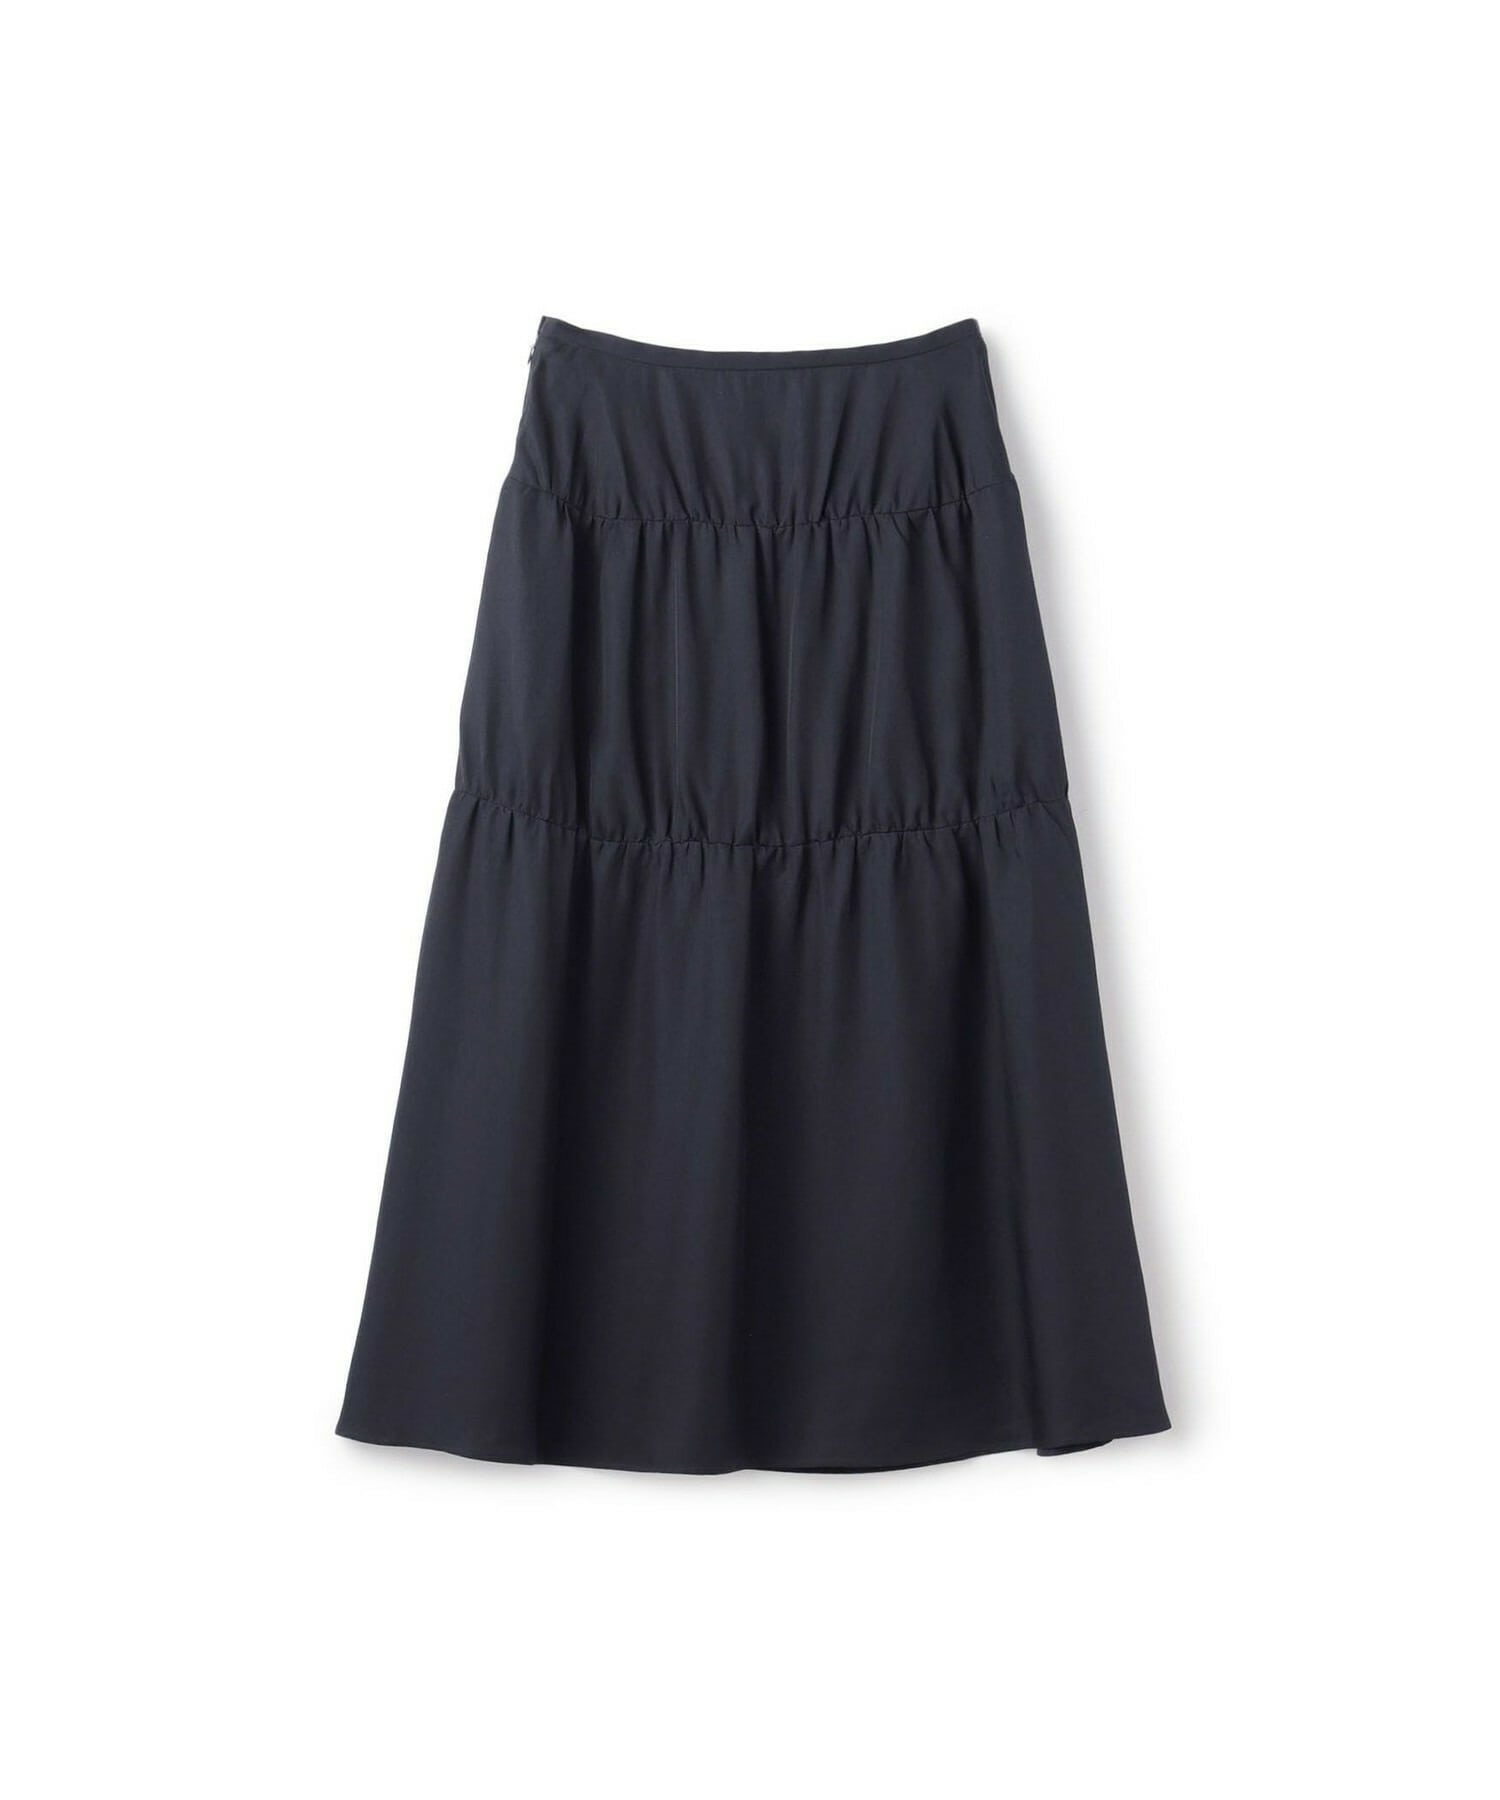 8,550円ドレープツイルスカート